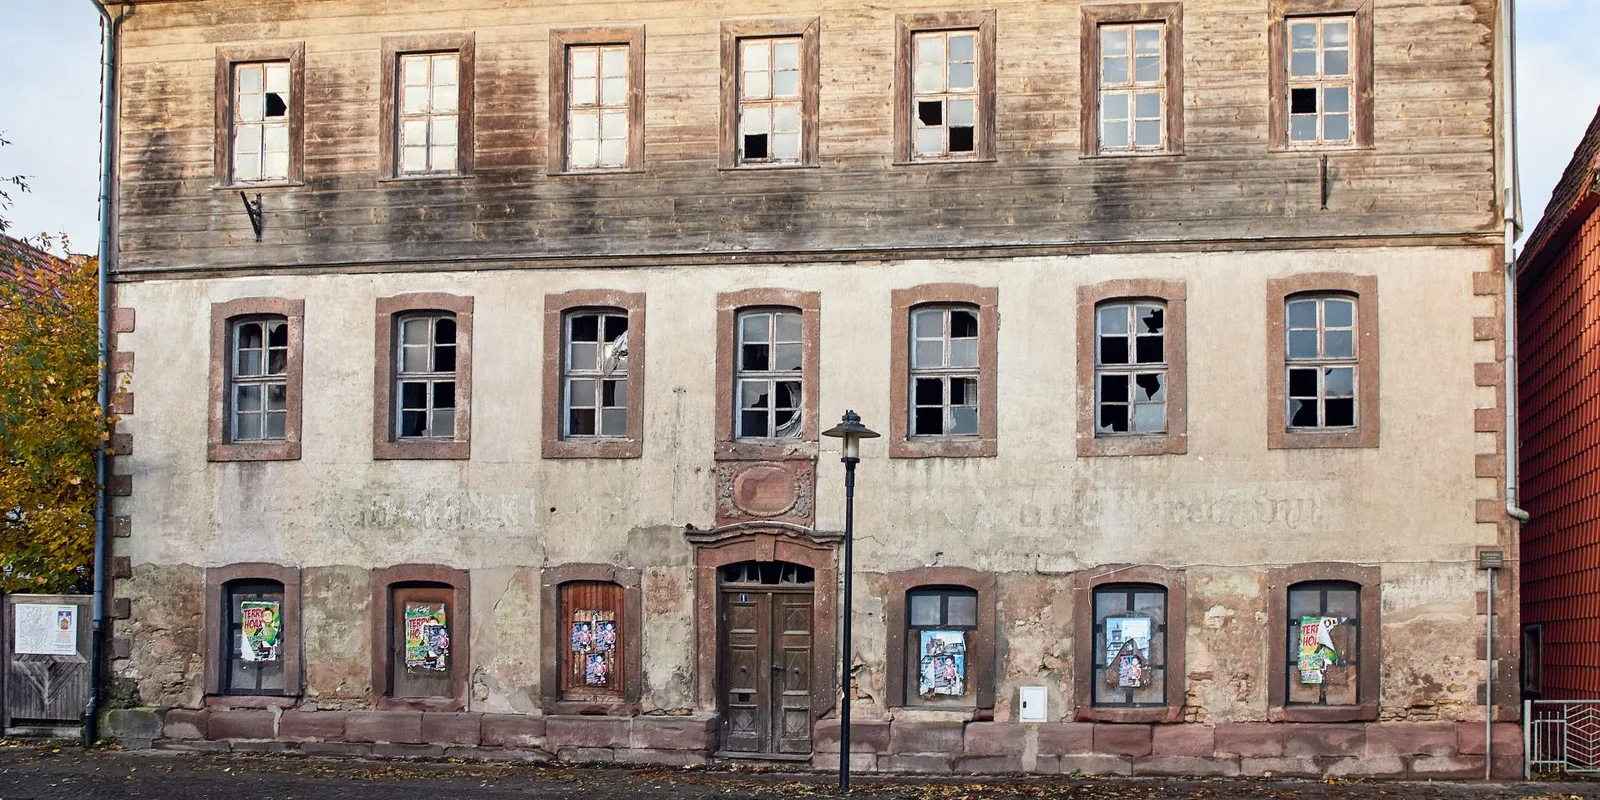 Außenansicht Ratskeller Moringen, ein altes zerfallenes Gebäude mit kaputten Fenstern